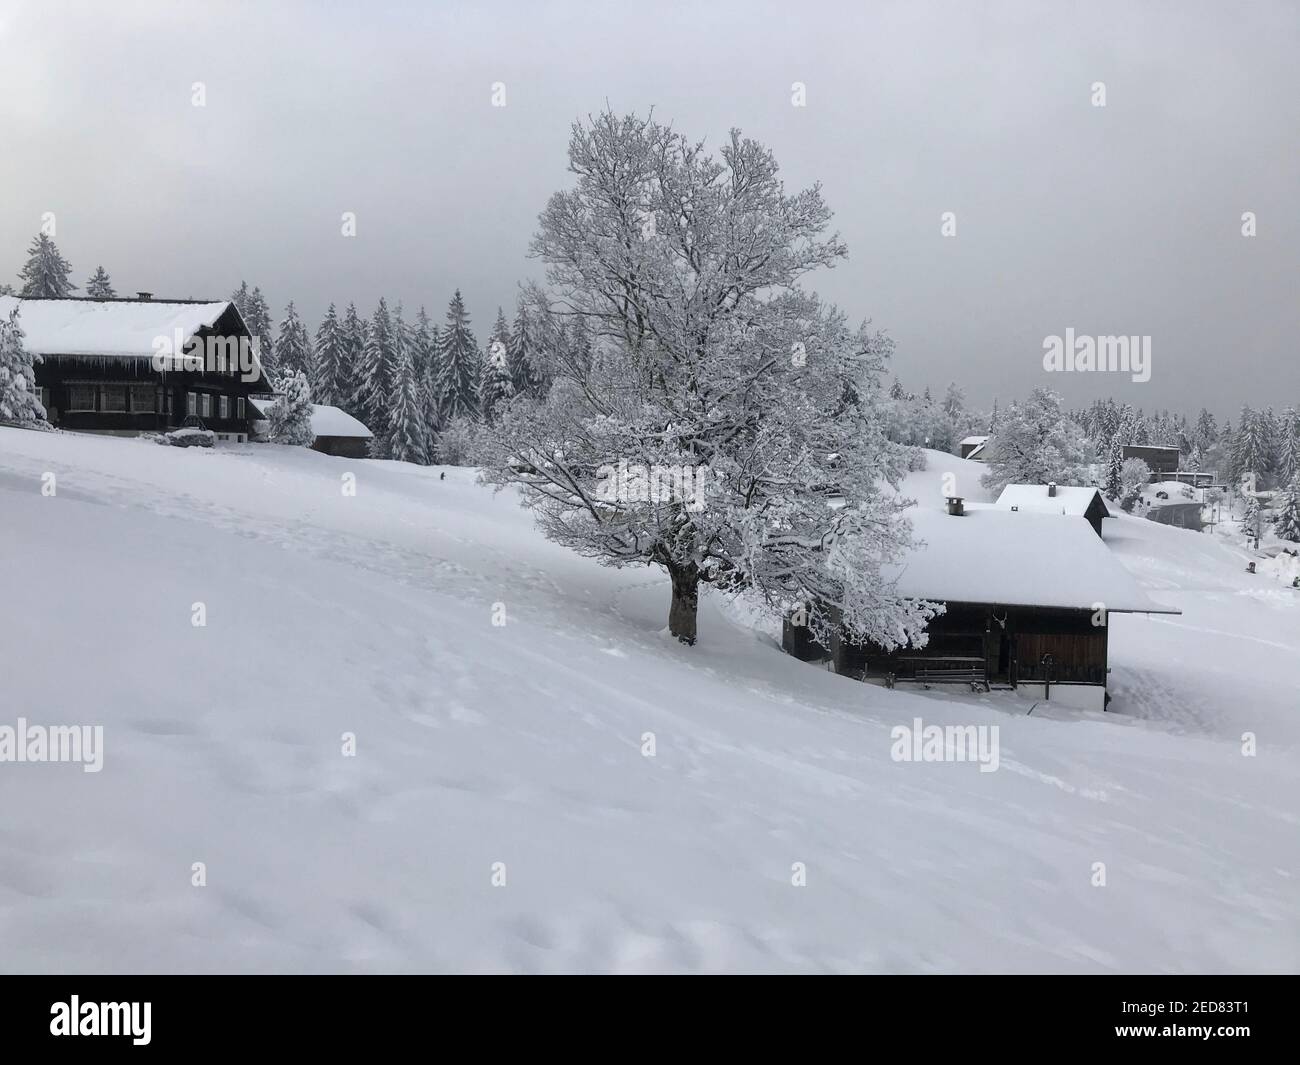 casa de vacaciones con un solo árbol nevado, país de las maravillas de invierno. Las cabañas de madera están justo en la pista de esquí cubierta de nieve. Magic Travel Bödele Dornbirn Foto de stock